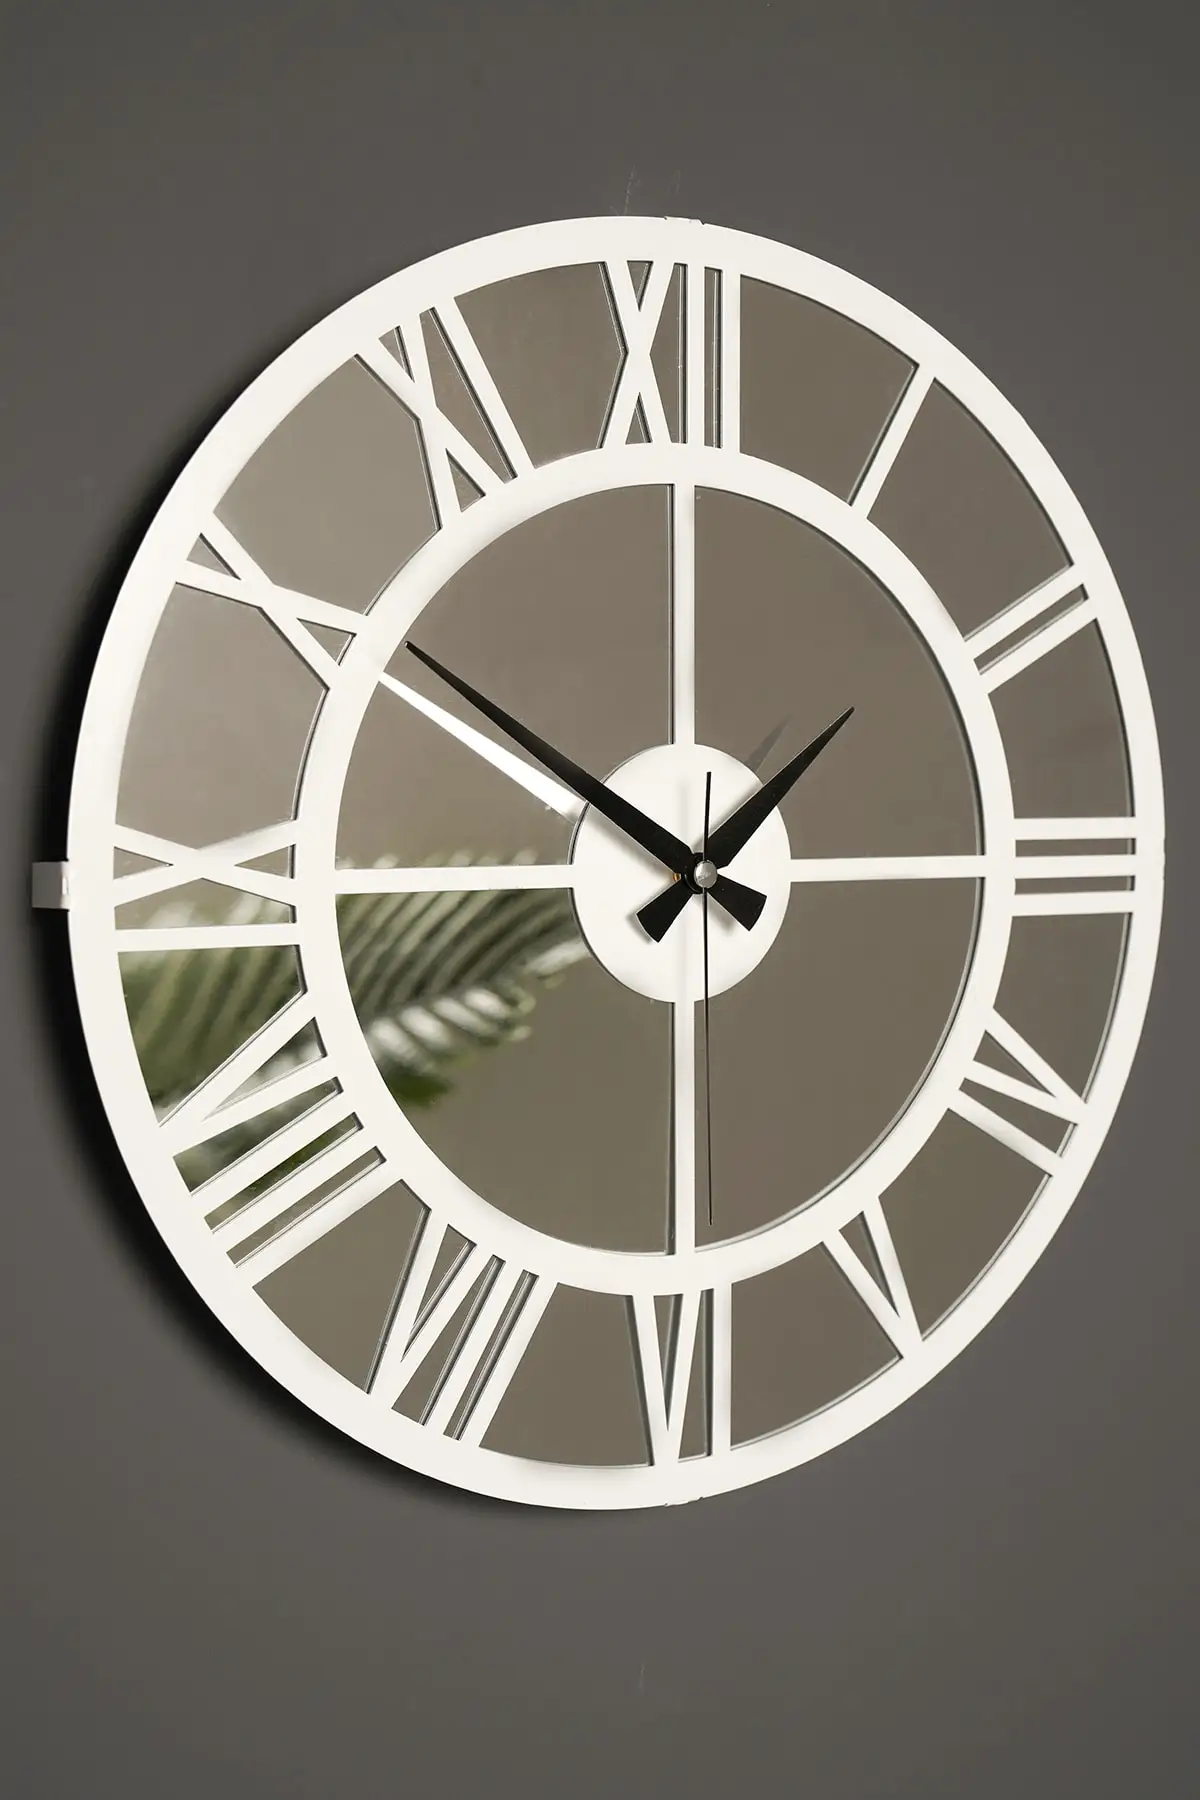 

Muyika римские белые зеркальные металлические настенные часы 41x41 см тихие зеркальные часы